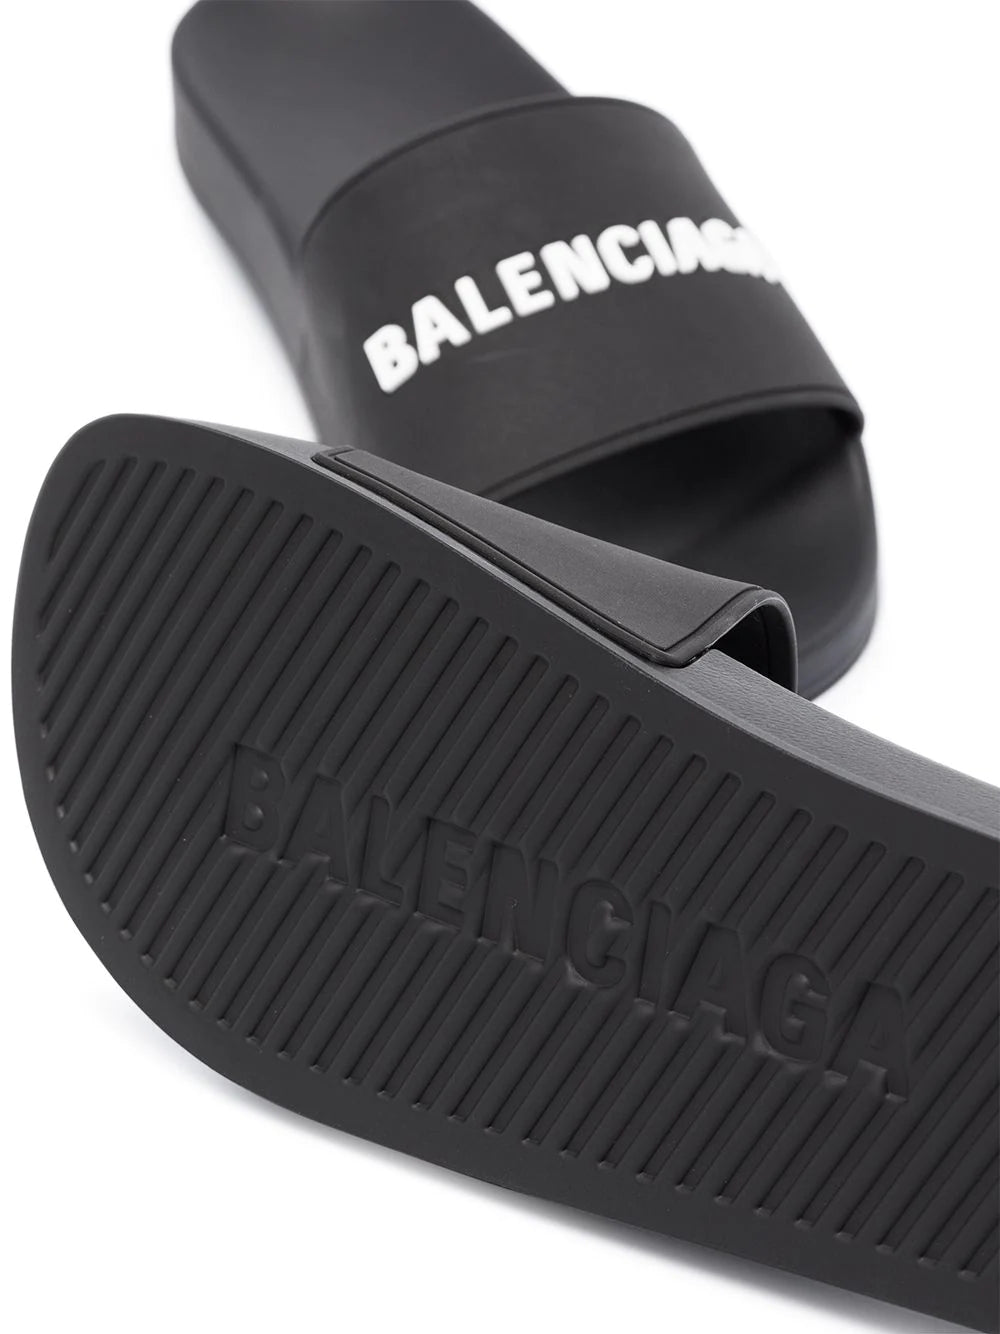 BALENCIAGA Pool Slides Black/White - MAISONDEFASHION.COM